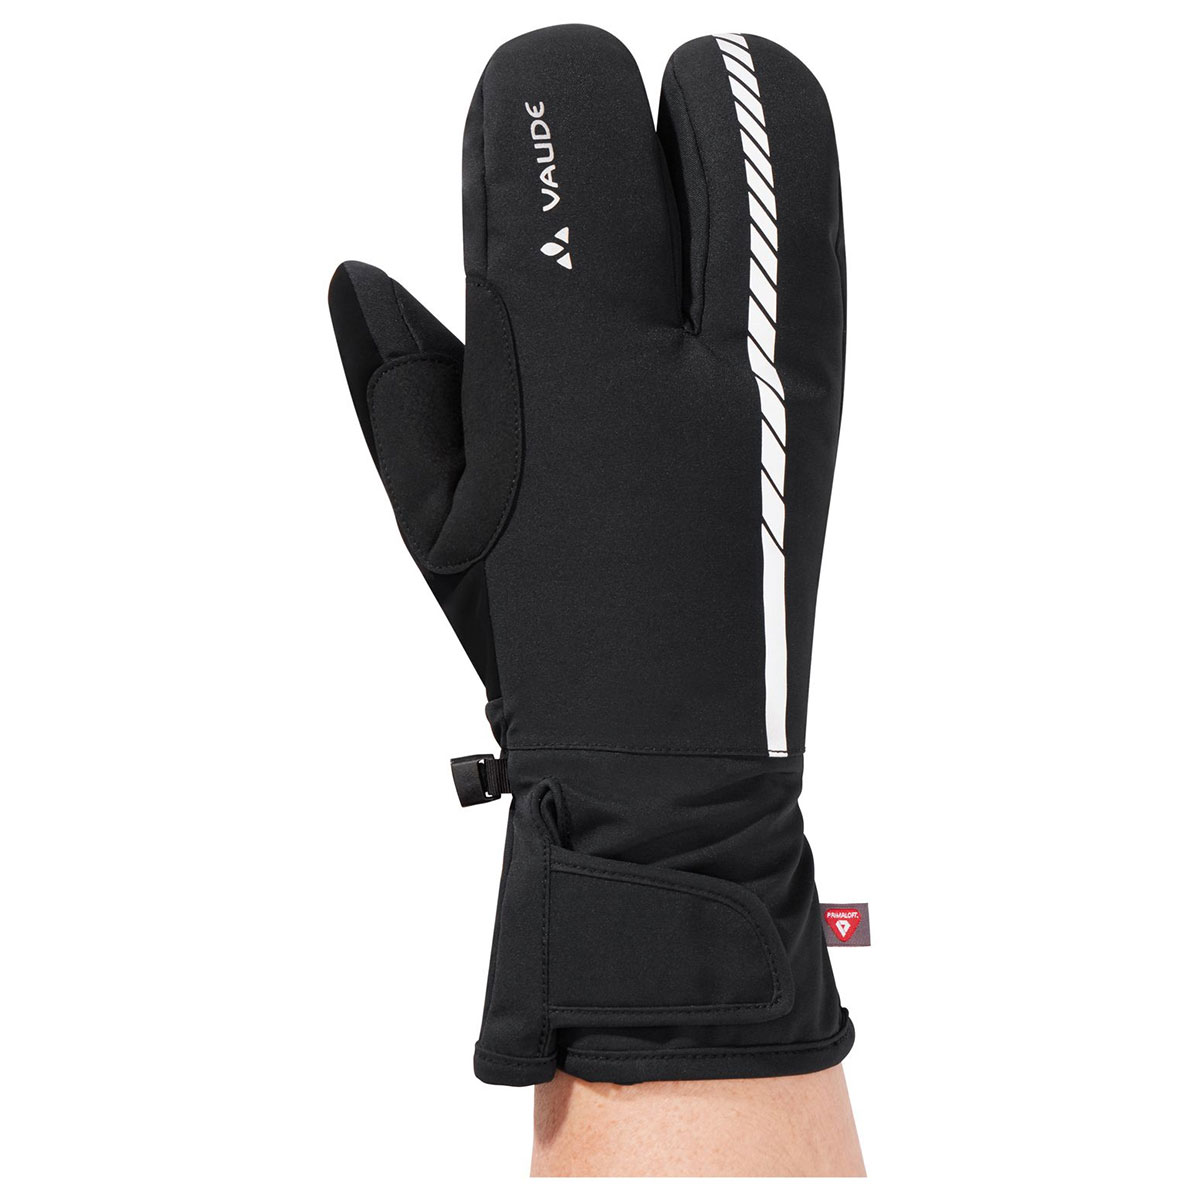 Handschuhe | Bekleidung Sport Shop Trekking | Bergsport, & | Spezial für - Fahrradhandschuhe Ski